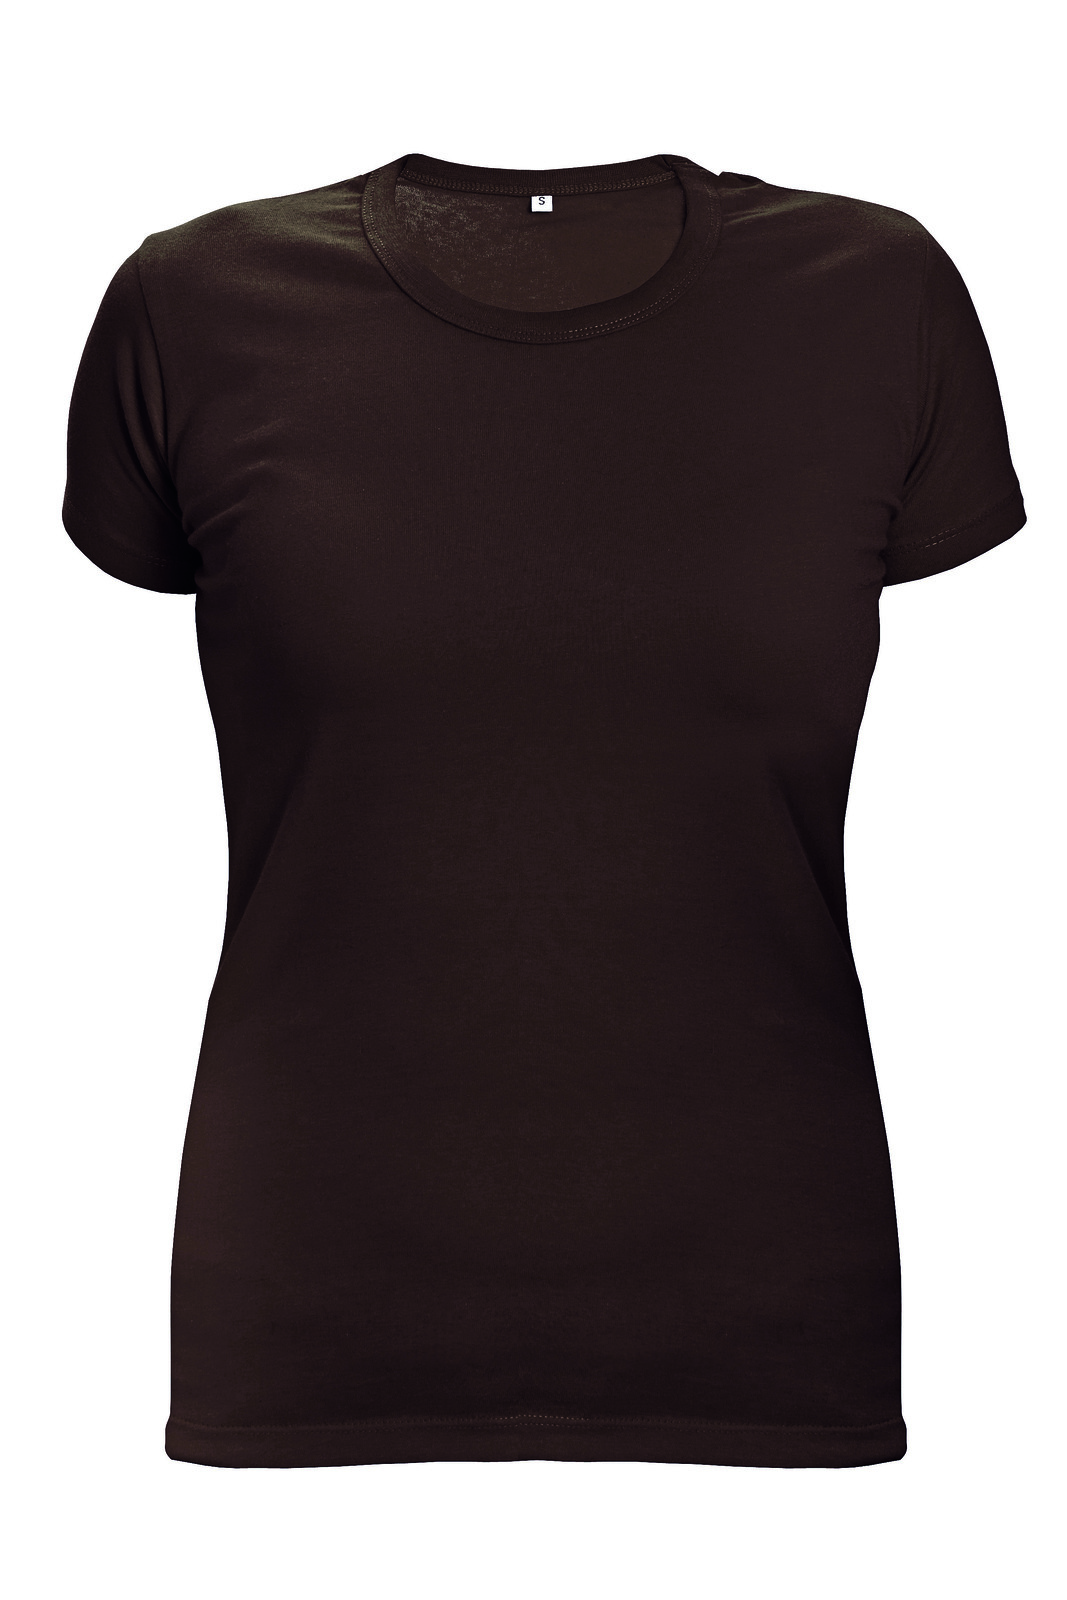 Dámske tričko s krátkym rukávom Surma Lady - veľkosť: XXL, farba: tmavo hnedá